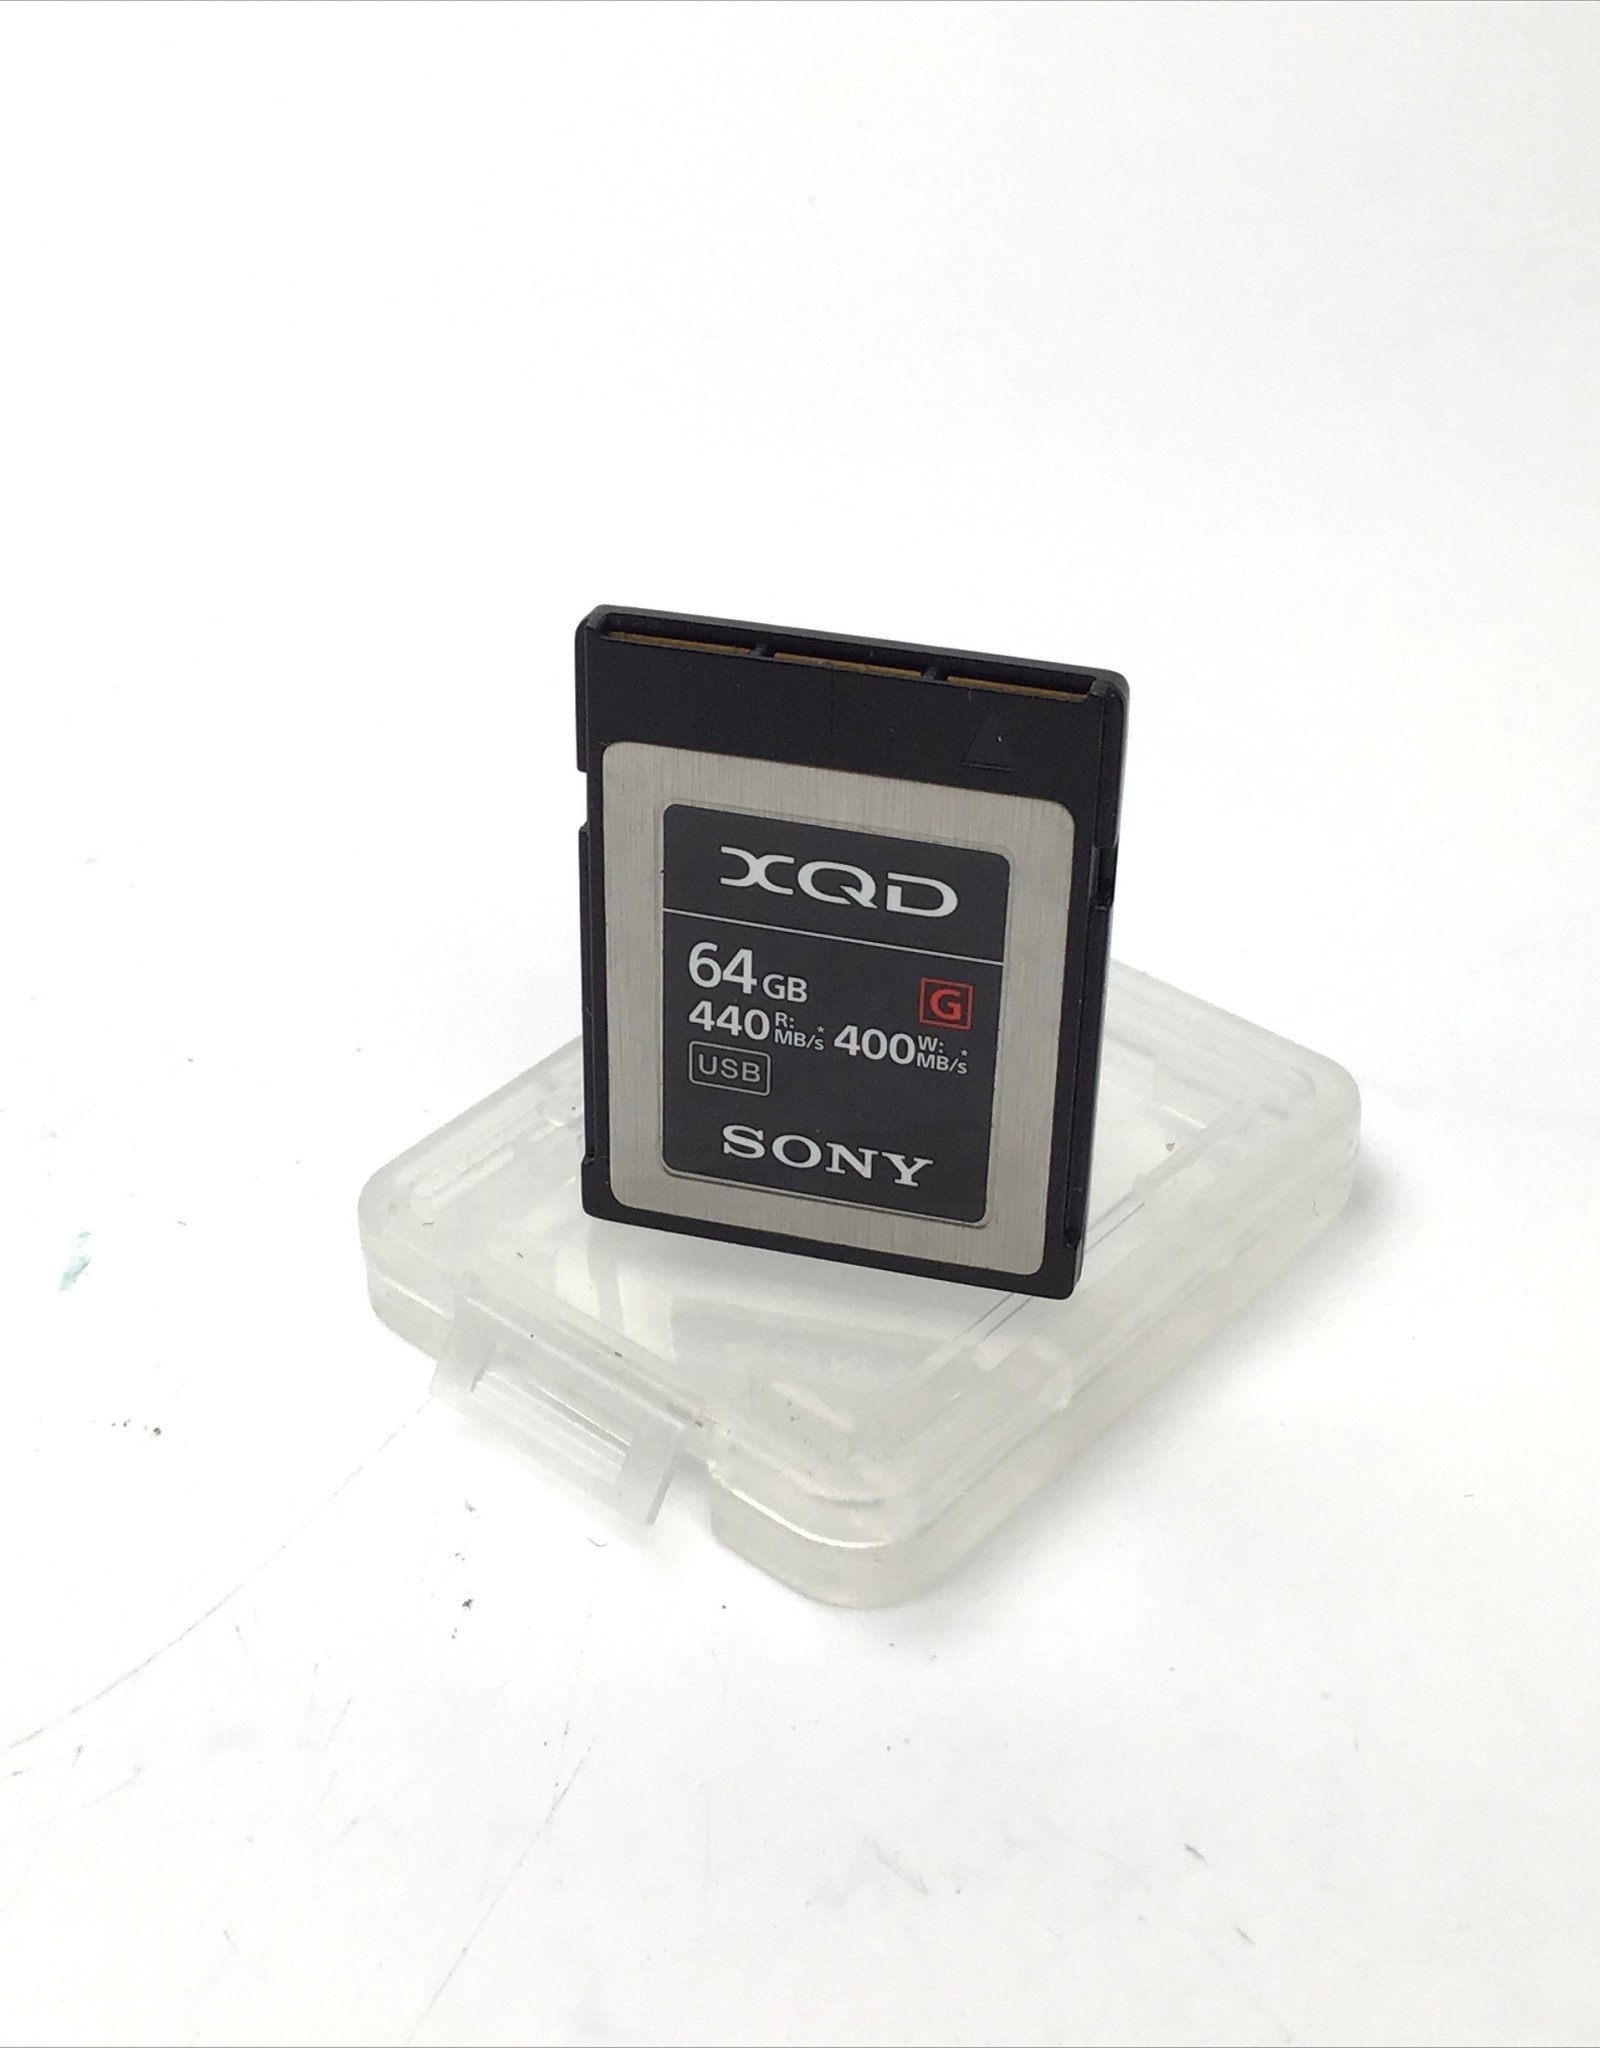 SONY Sony G XQD 64 GB Memory Card Used EX